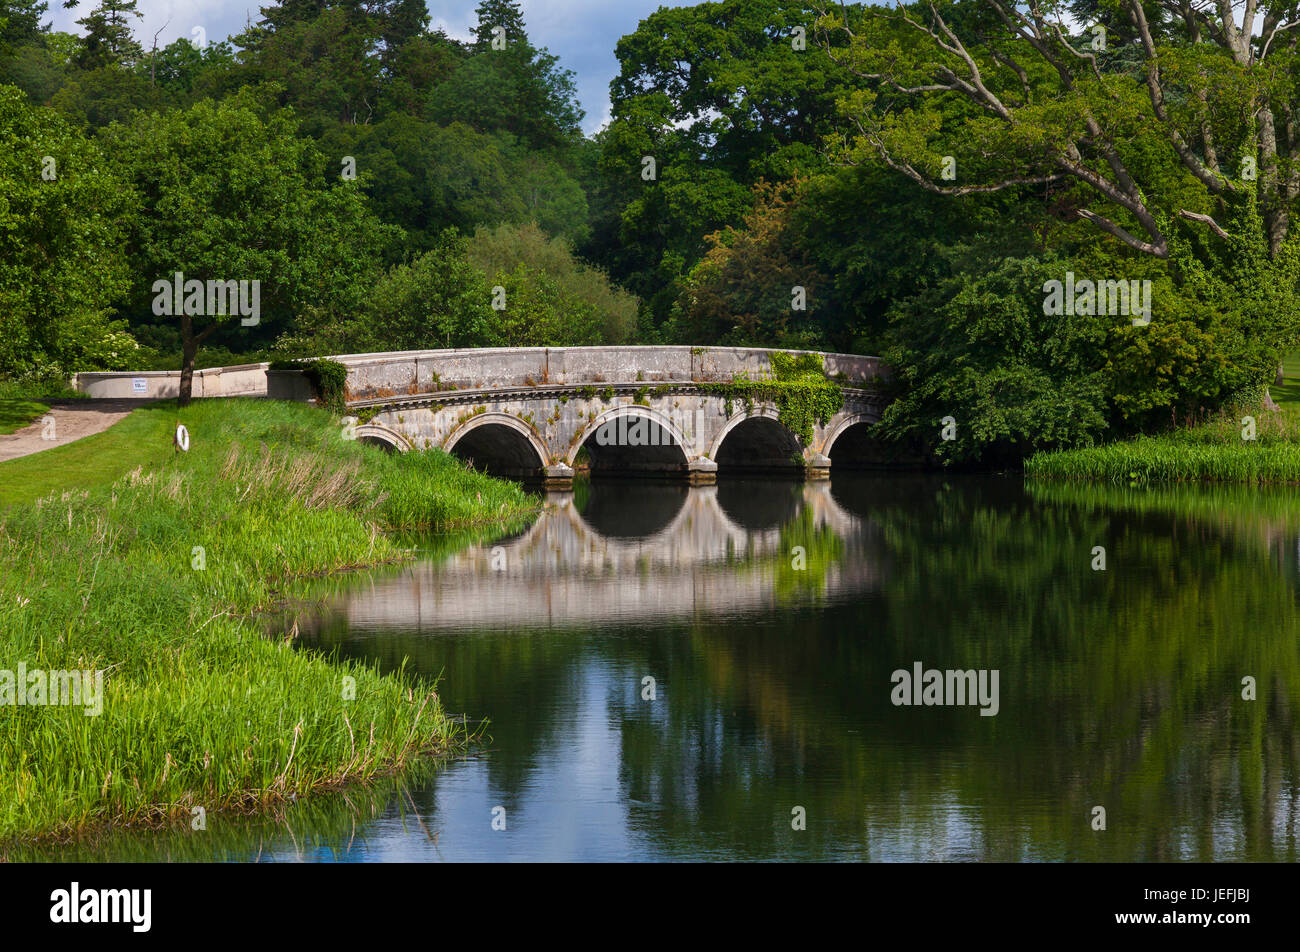 Brücke über den Fluss Roggen Teil das schönste Beispiel in Irland einer georgischen erstellt Parkland-Landschaft. Carton House, Maynooth, County Kildare, Ire Stockfoto